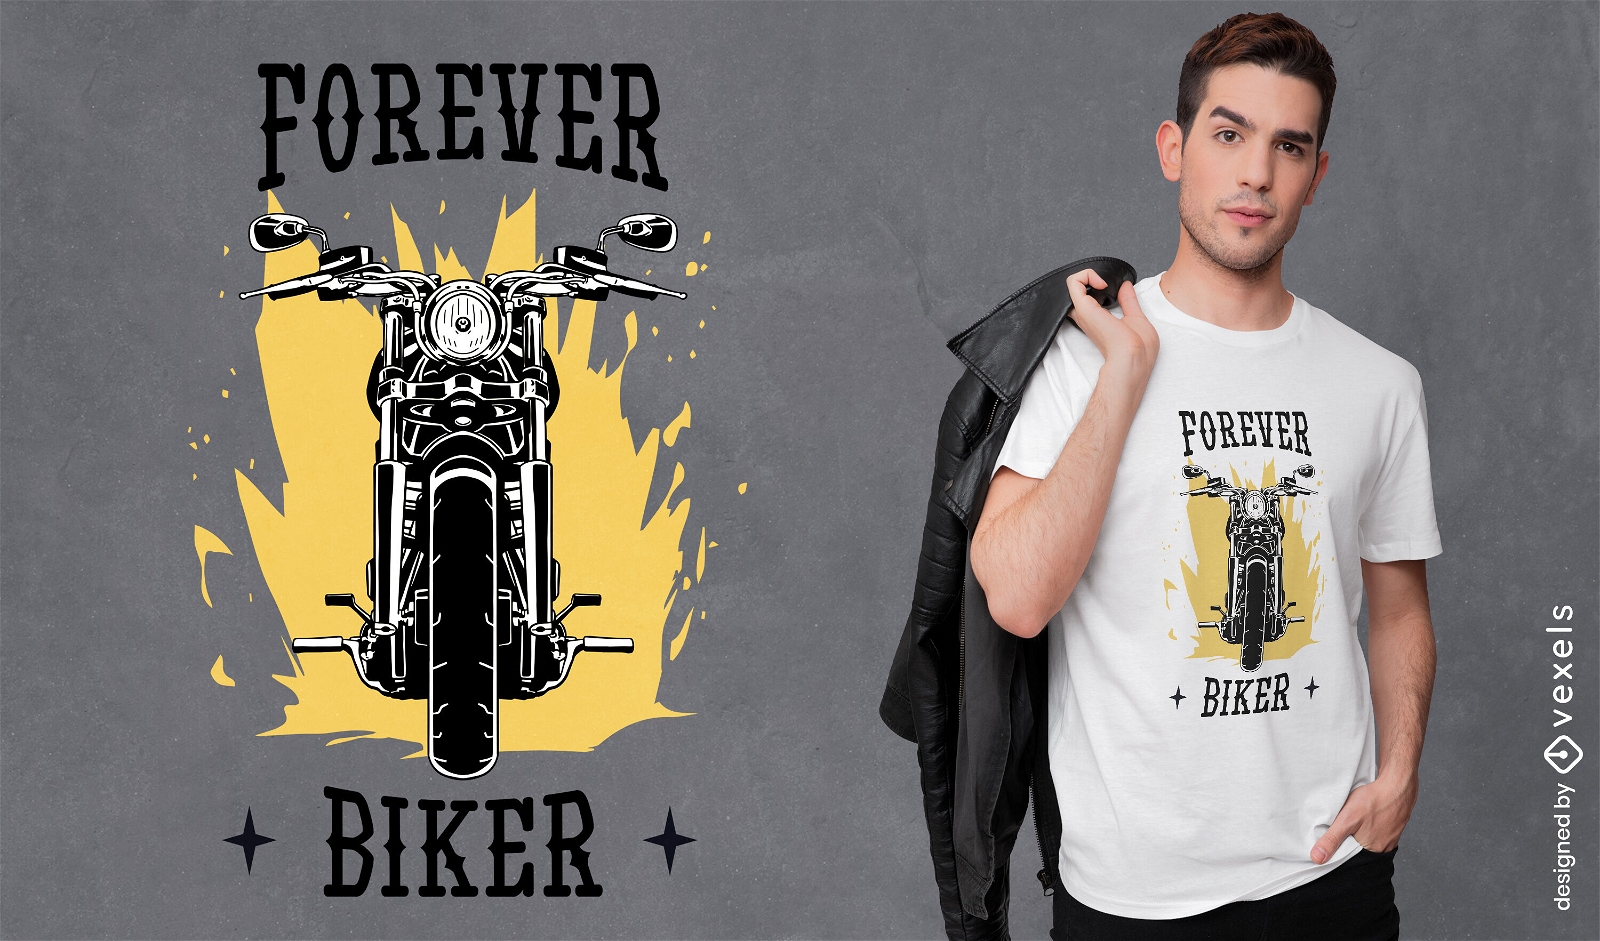 Forever biker t-shirt design